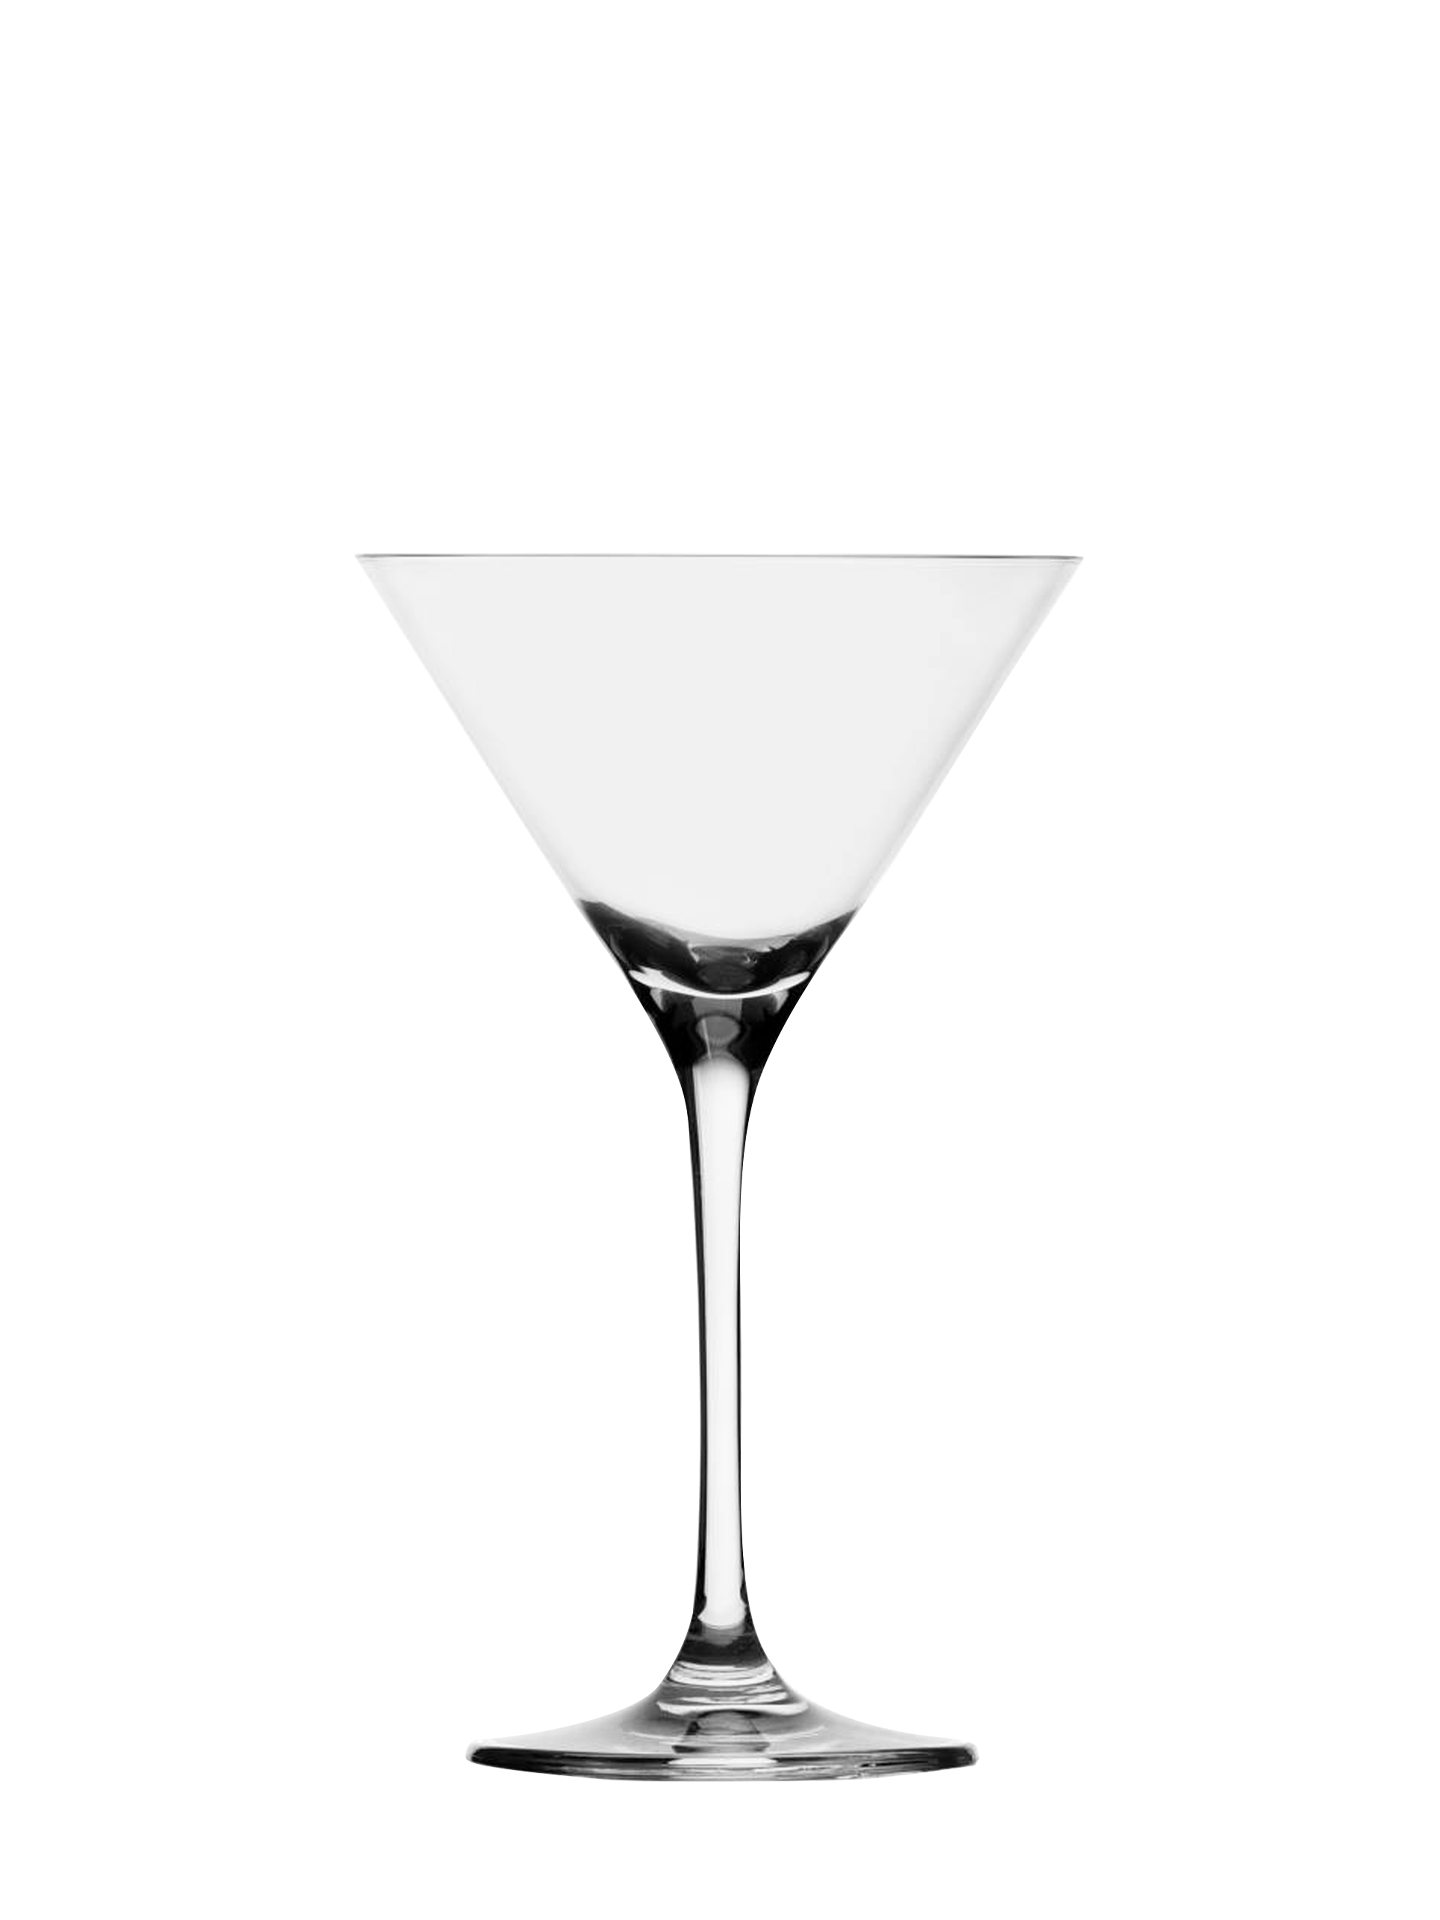 Sonoma martini glass